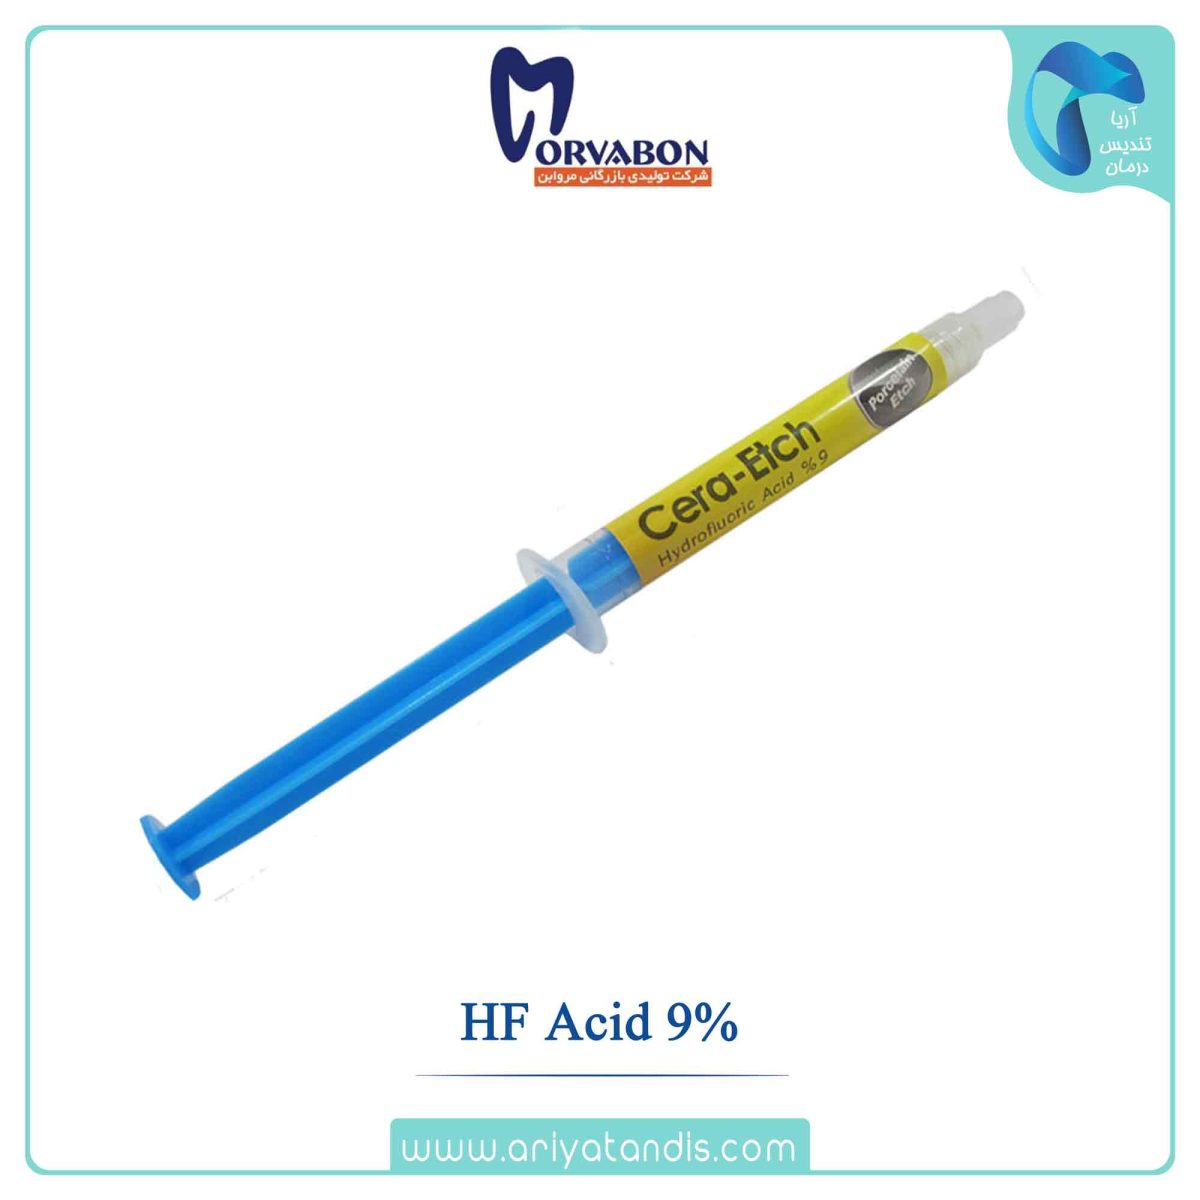 قیمت اسید اچ پرسلن، HF Acid 9% ، مروابن، Morvabon